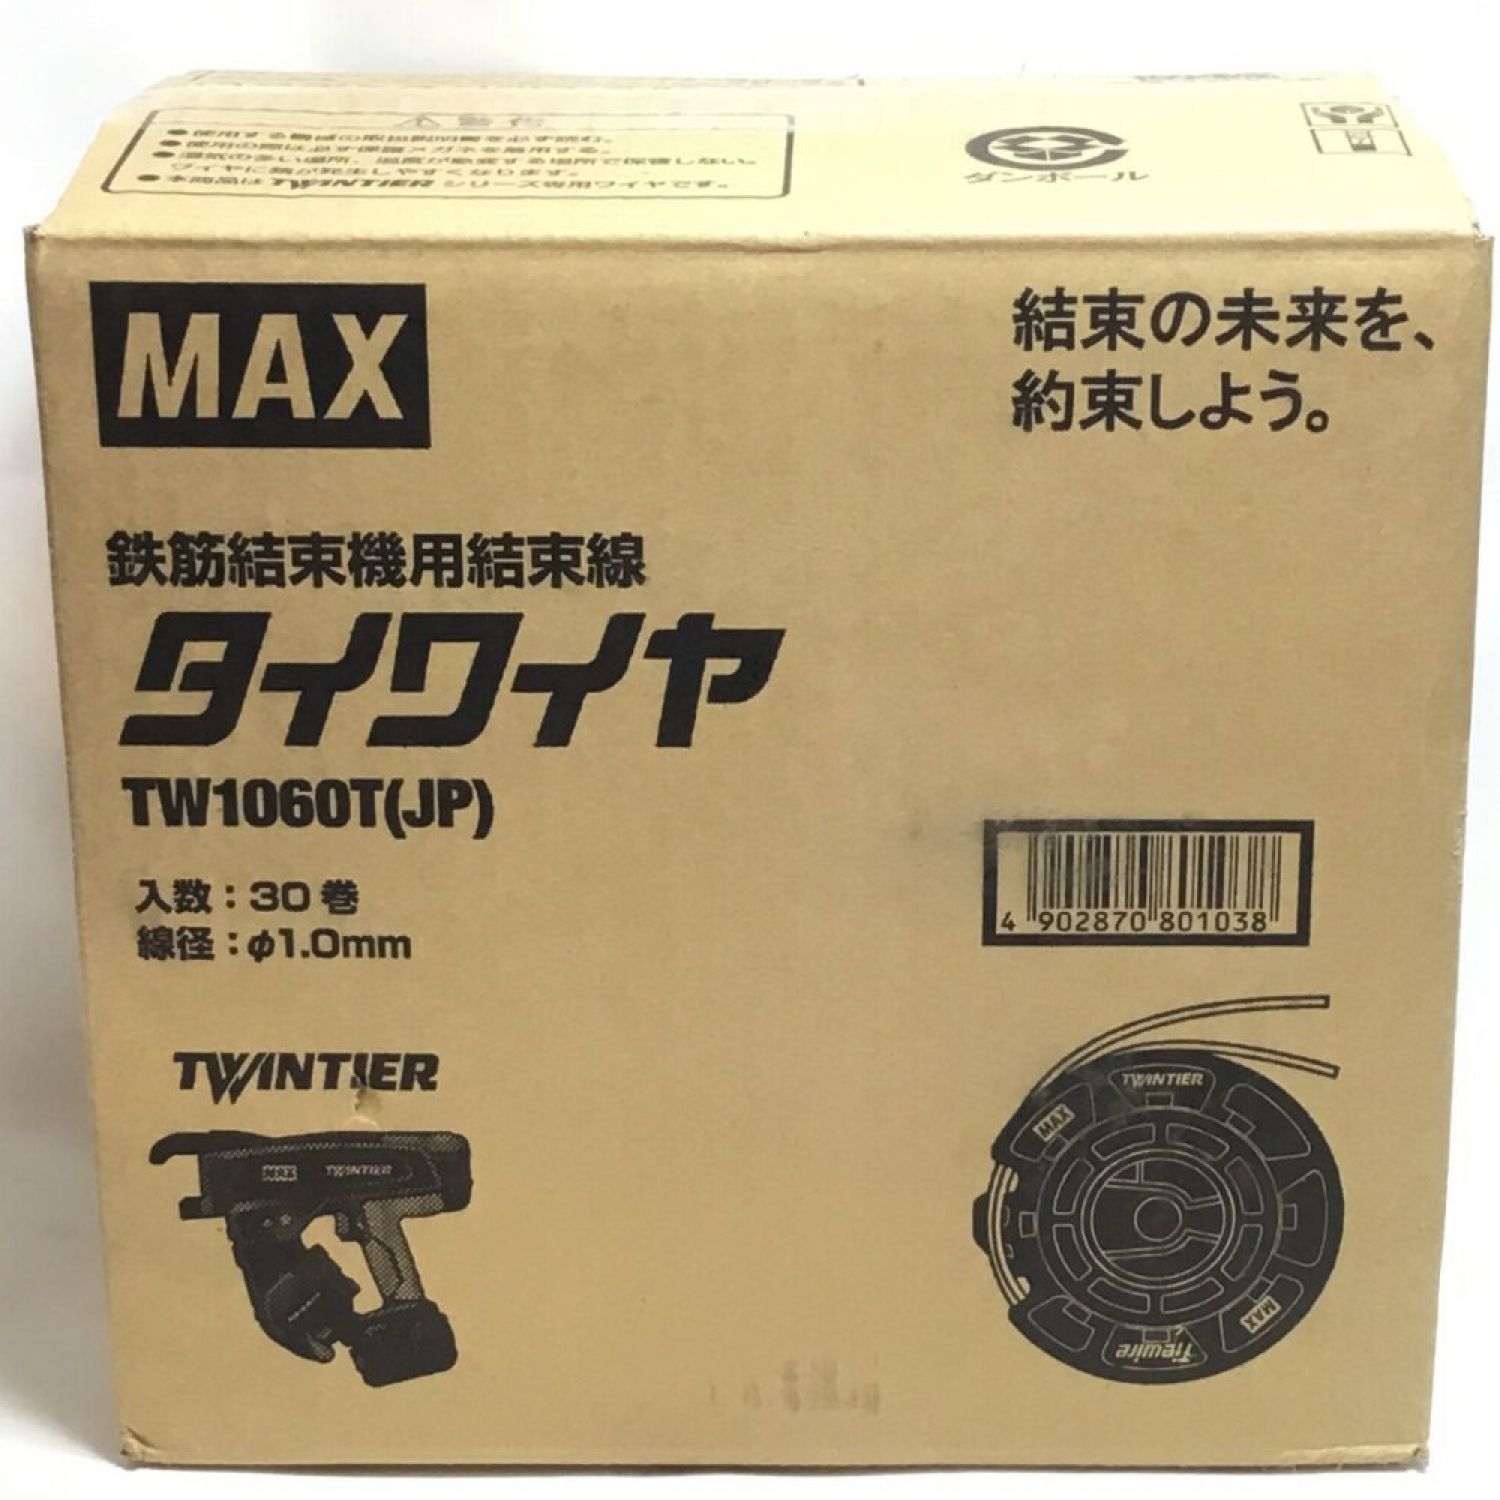 MAX マックス タイワイヤ 30巻入 未使用品(S) TW1060T Sランク